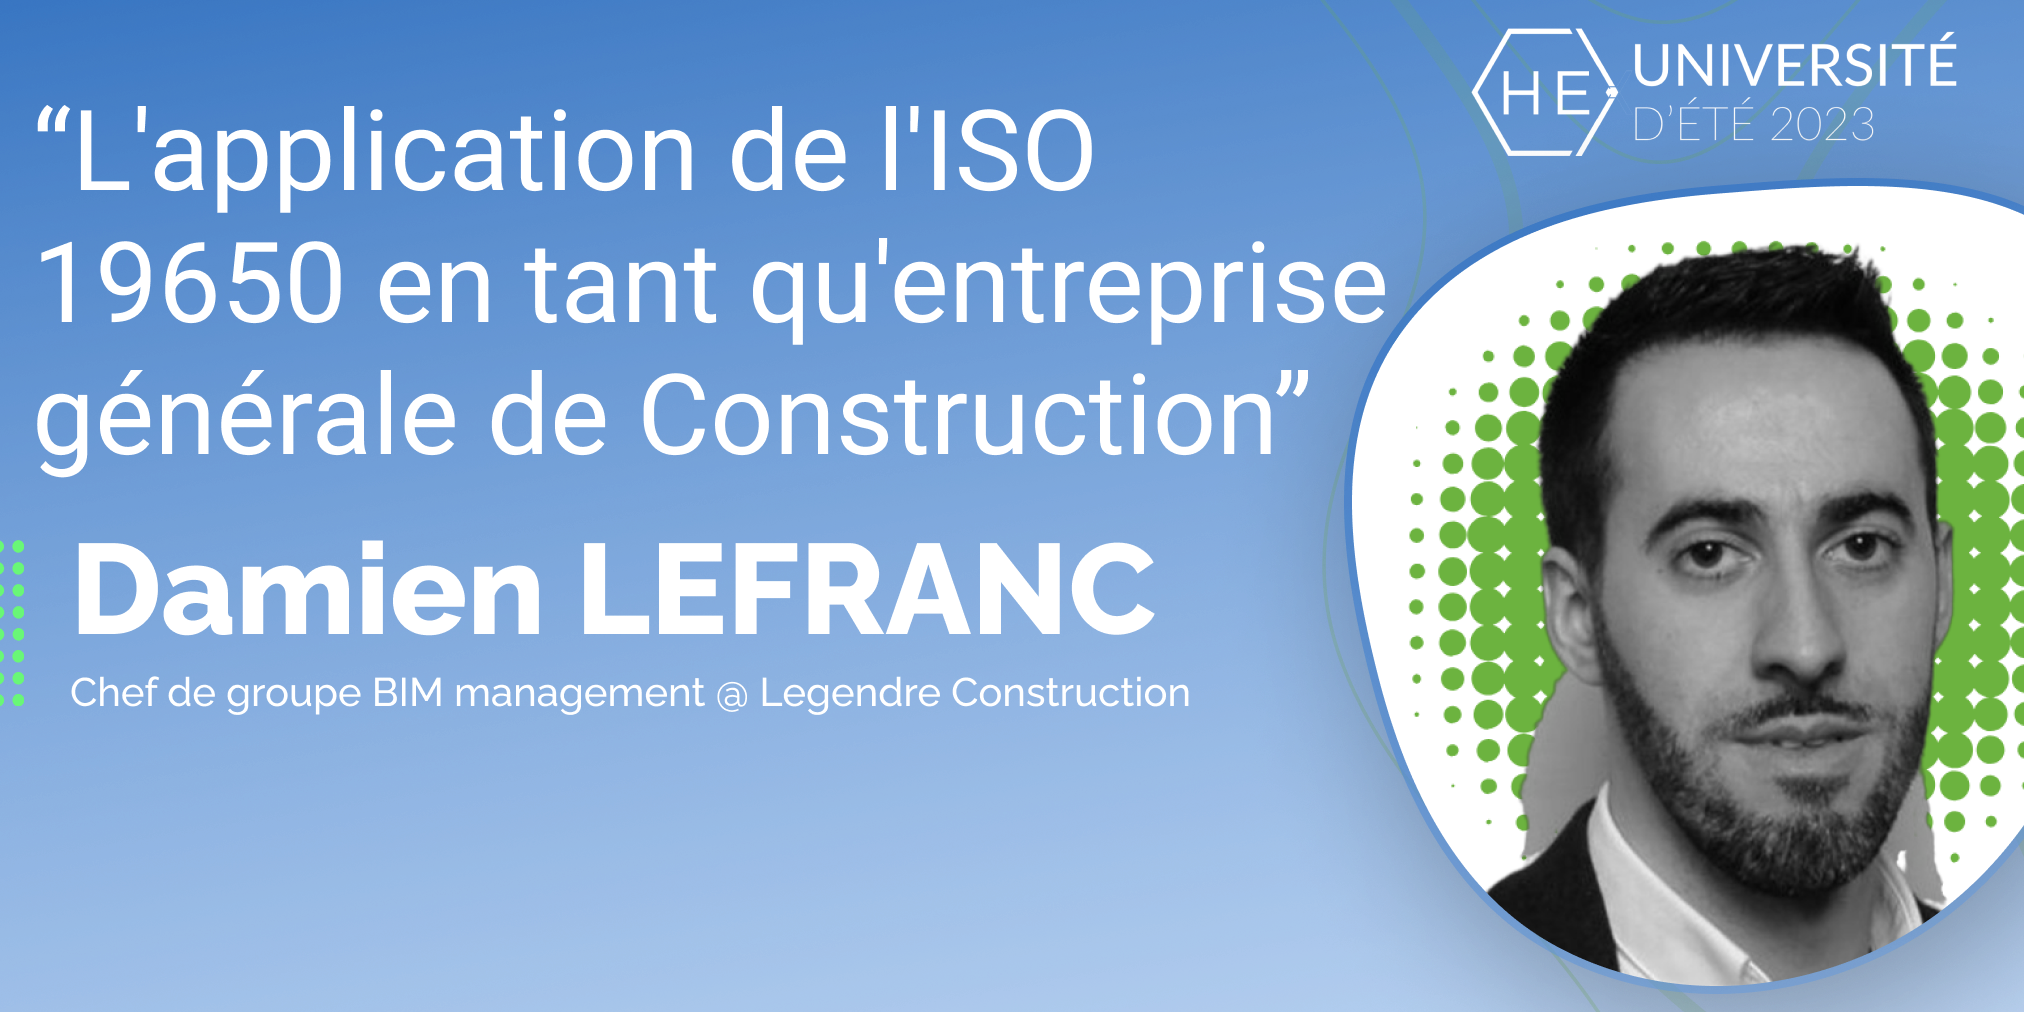 L'application de l'ISO 19650 en tant qu'entreprise générale de Construction